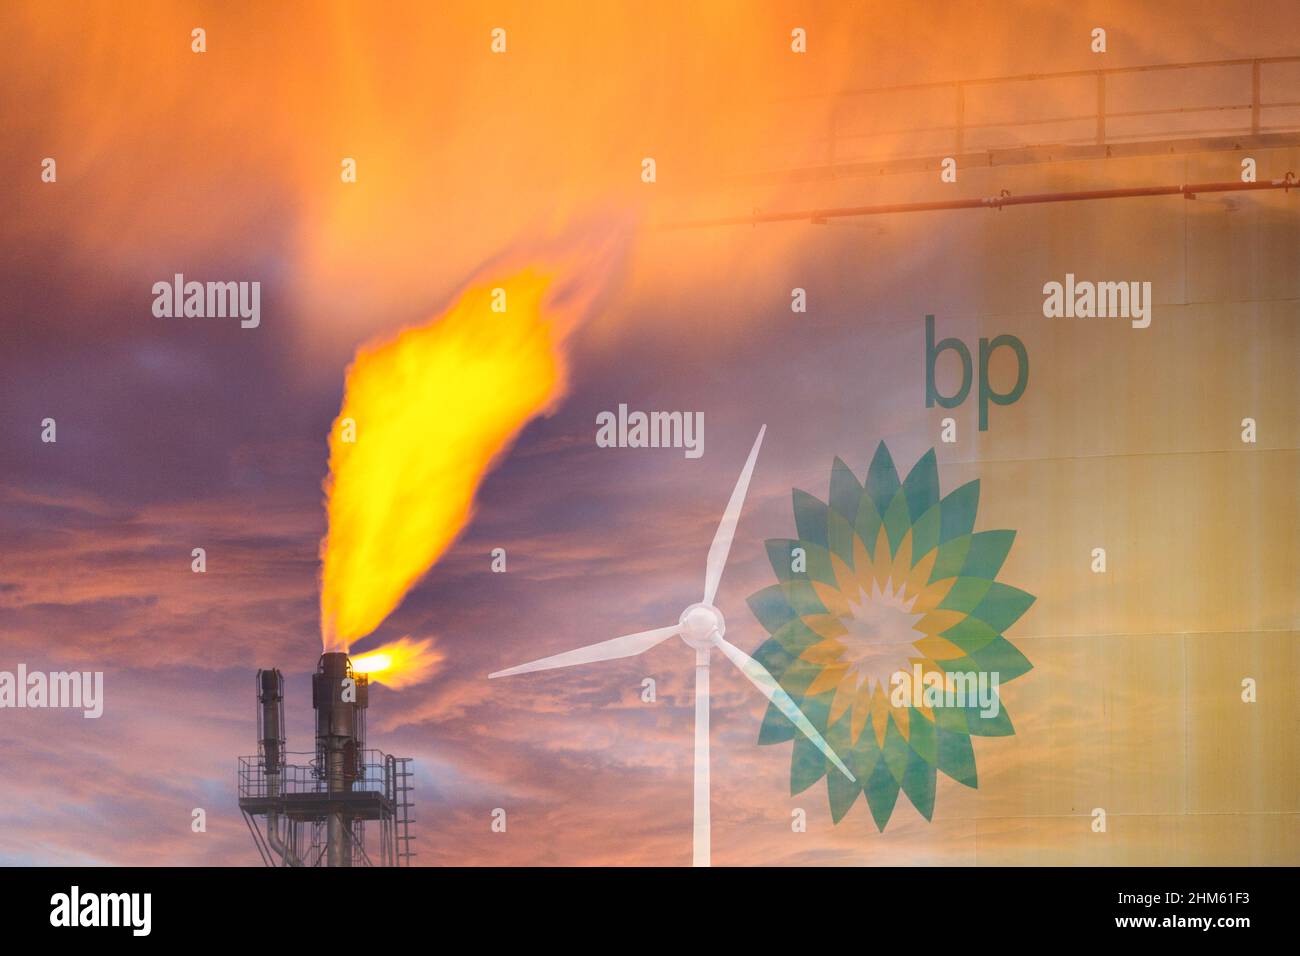 Réservoirs d'huile BP, de stockage de carburant. Image conceptuelle pour les combustibles fossiles, le gaz/pétrole de la mer du Nord, les énergies renouvelables, le changement climatique, nette zéro 2050, bénéfices de l'industrie pétrolière... Banque D'Images